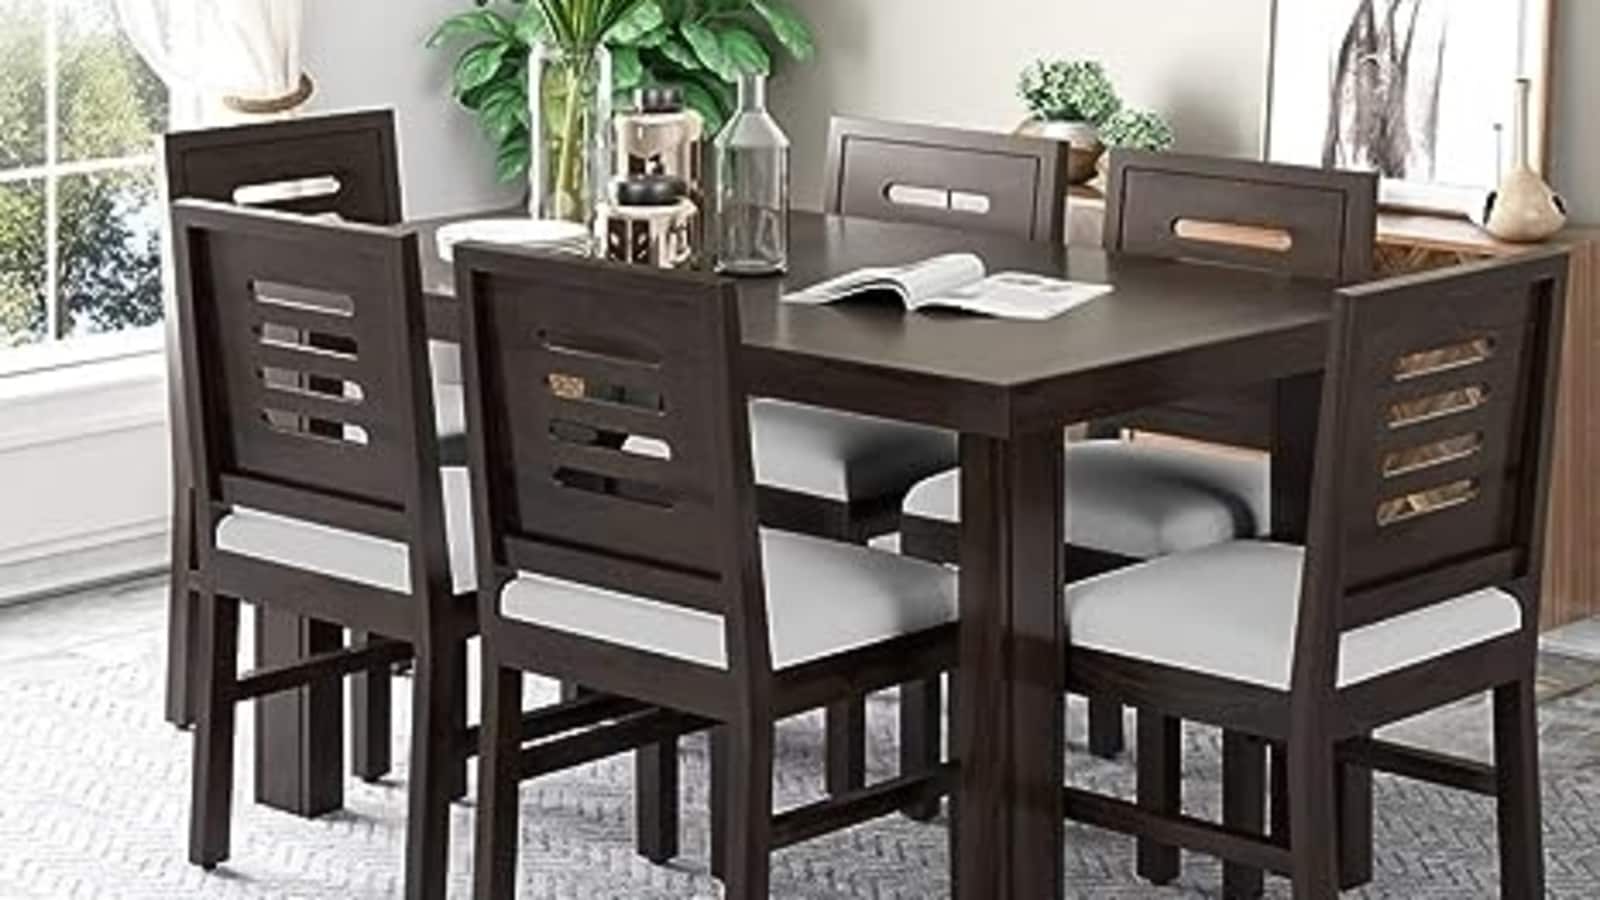 भोजन कक्ष की मेज और कुर्सियाँ: आपके निवास के लिए विचार करने के लिए 5 सर्वोत्तम विकल्प